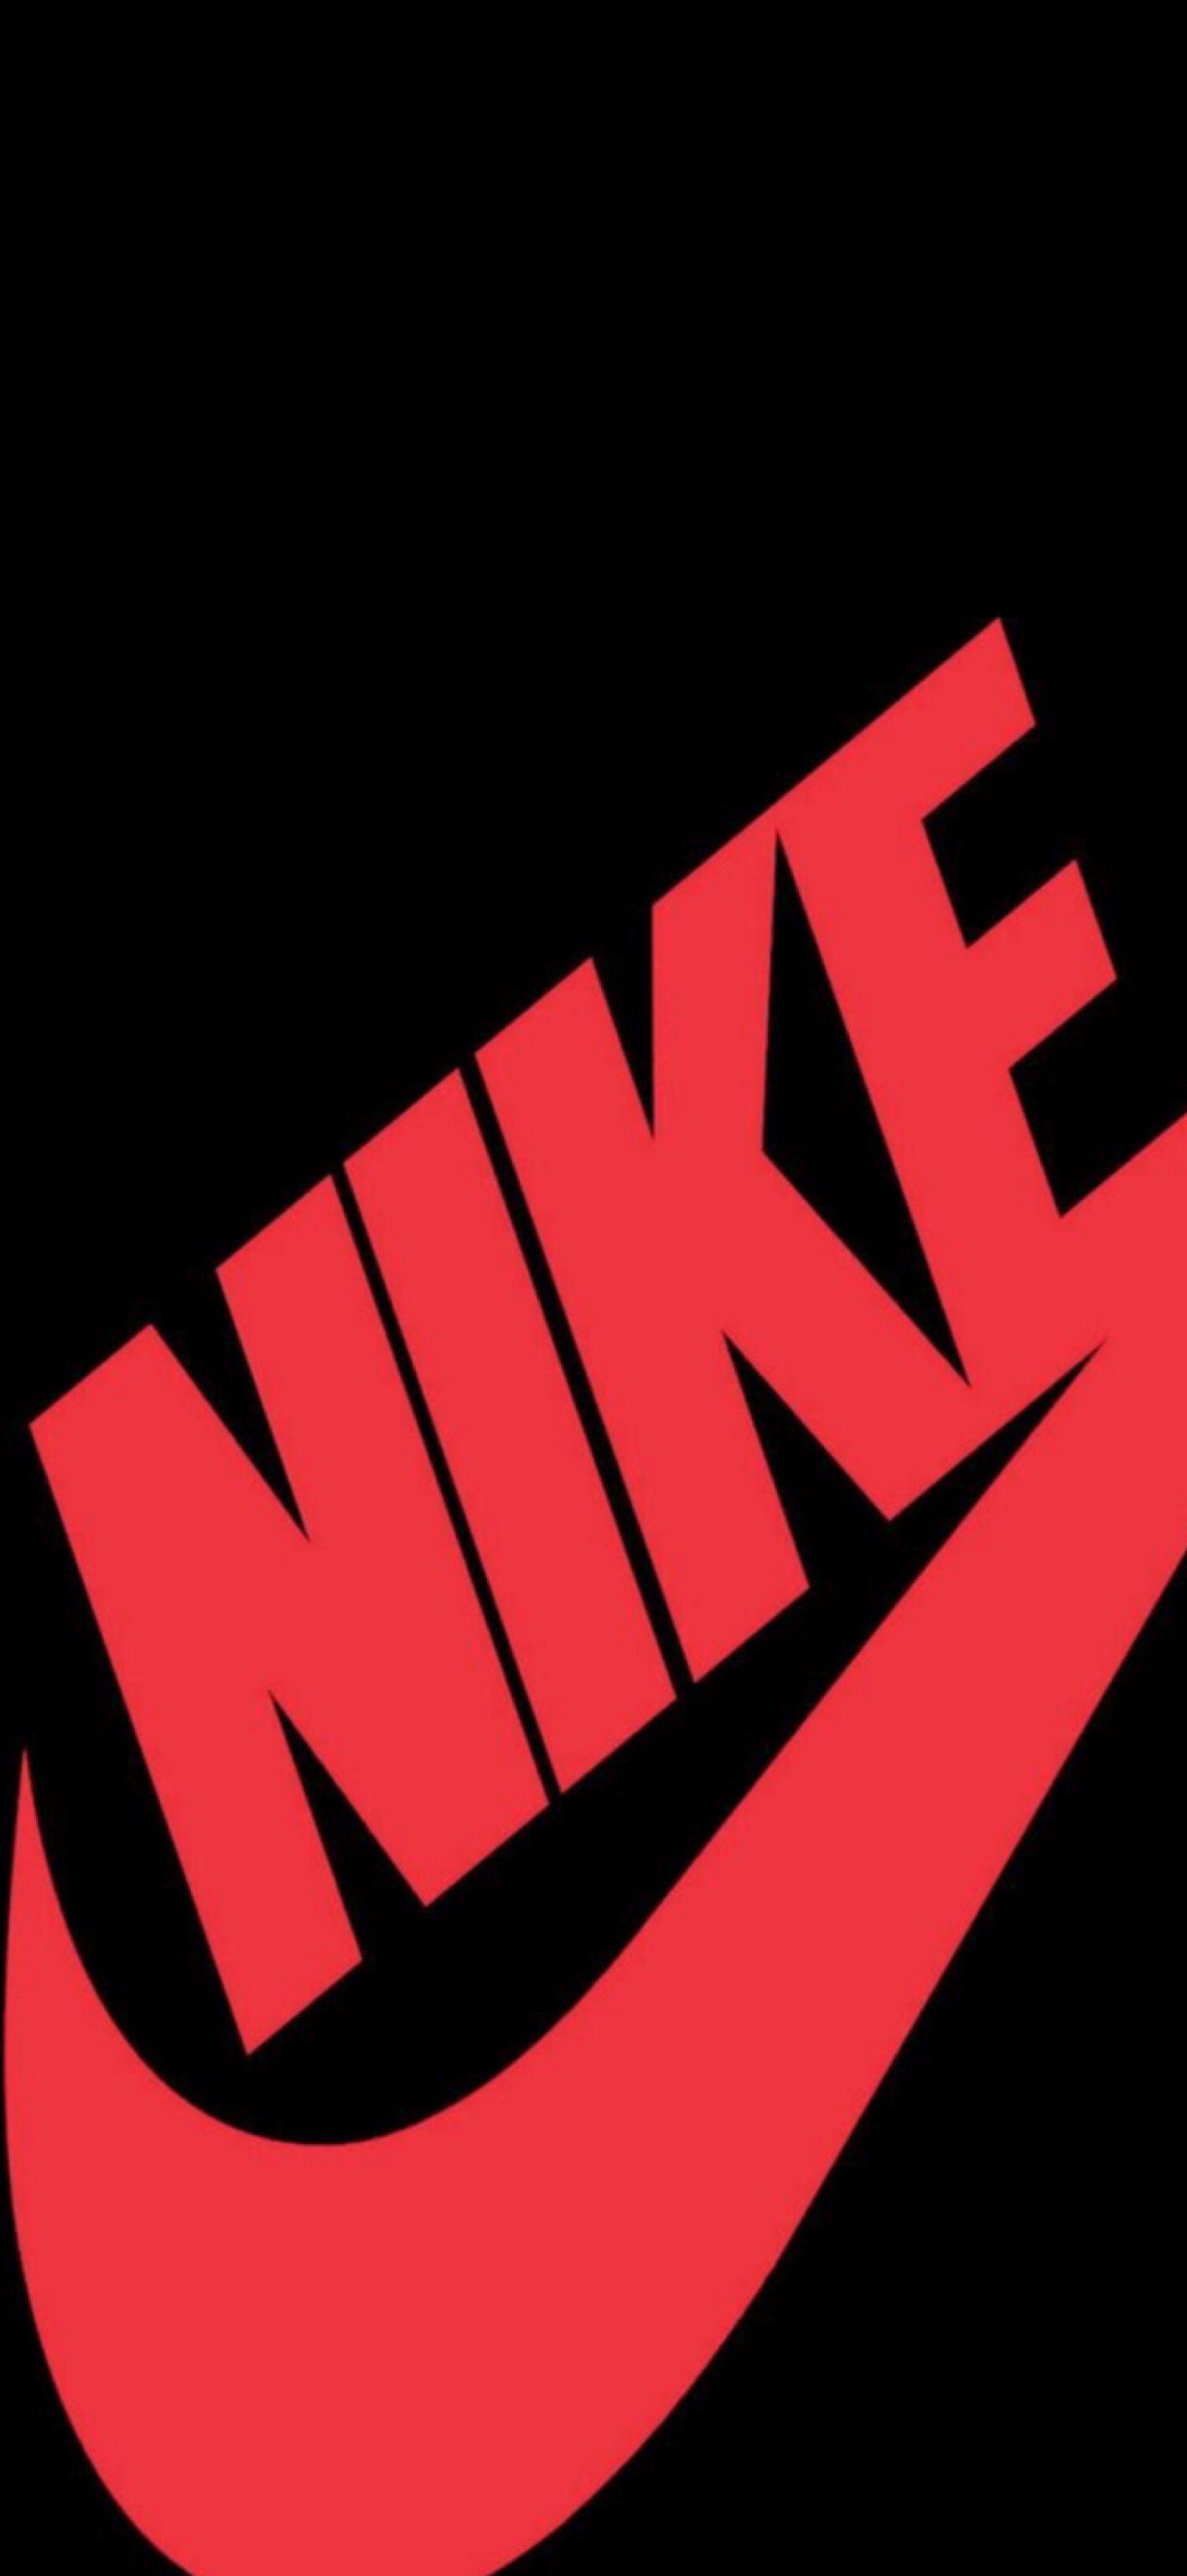 Authenticatie Onbelangrijk Boos worden Nike Logo Wallpapers - Top Free Nike Logo Backgrounds - WallpaperAccess